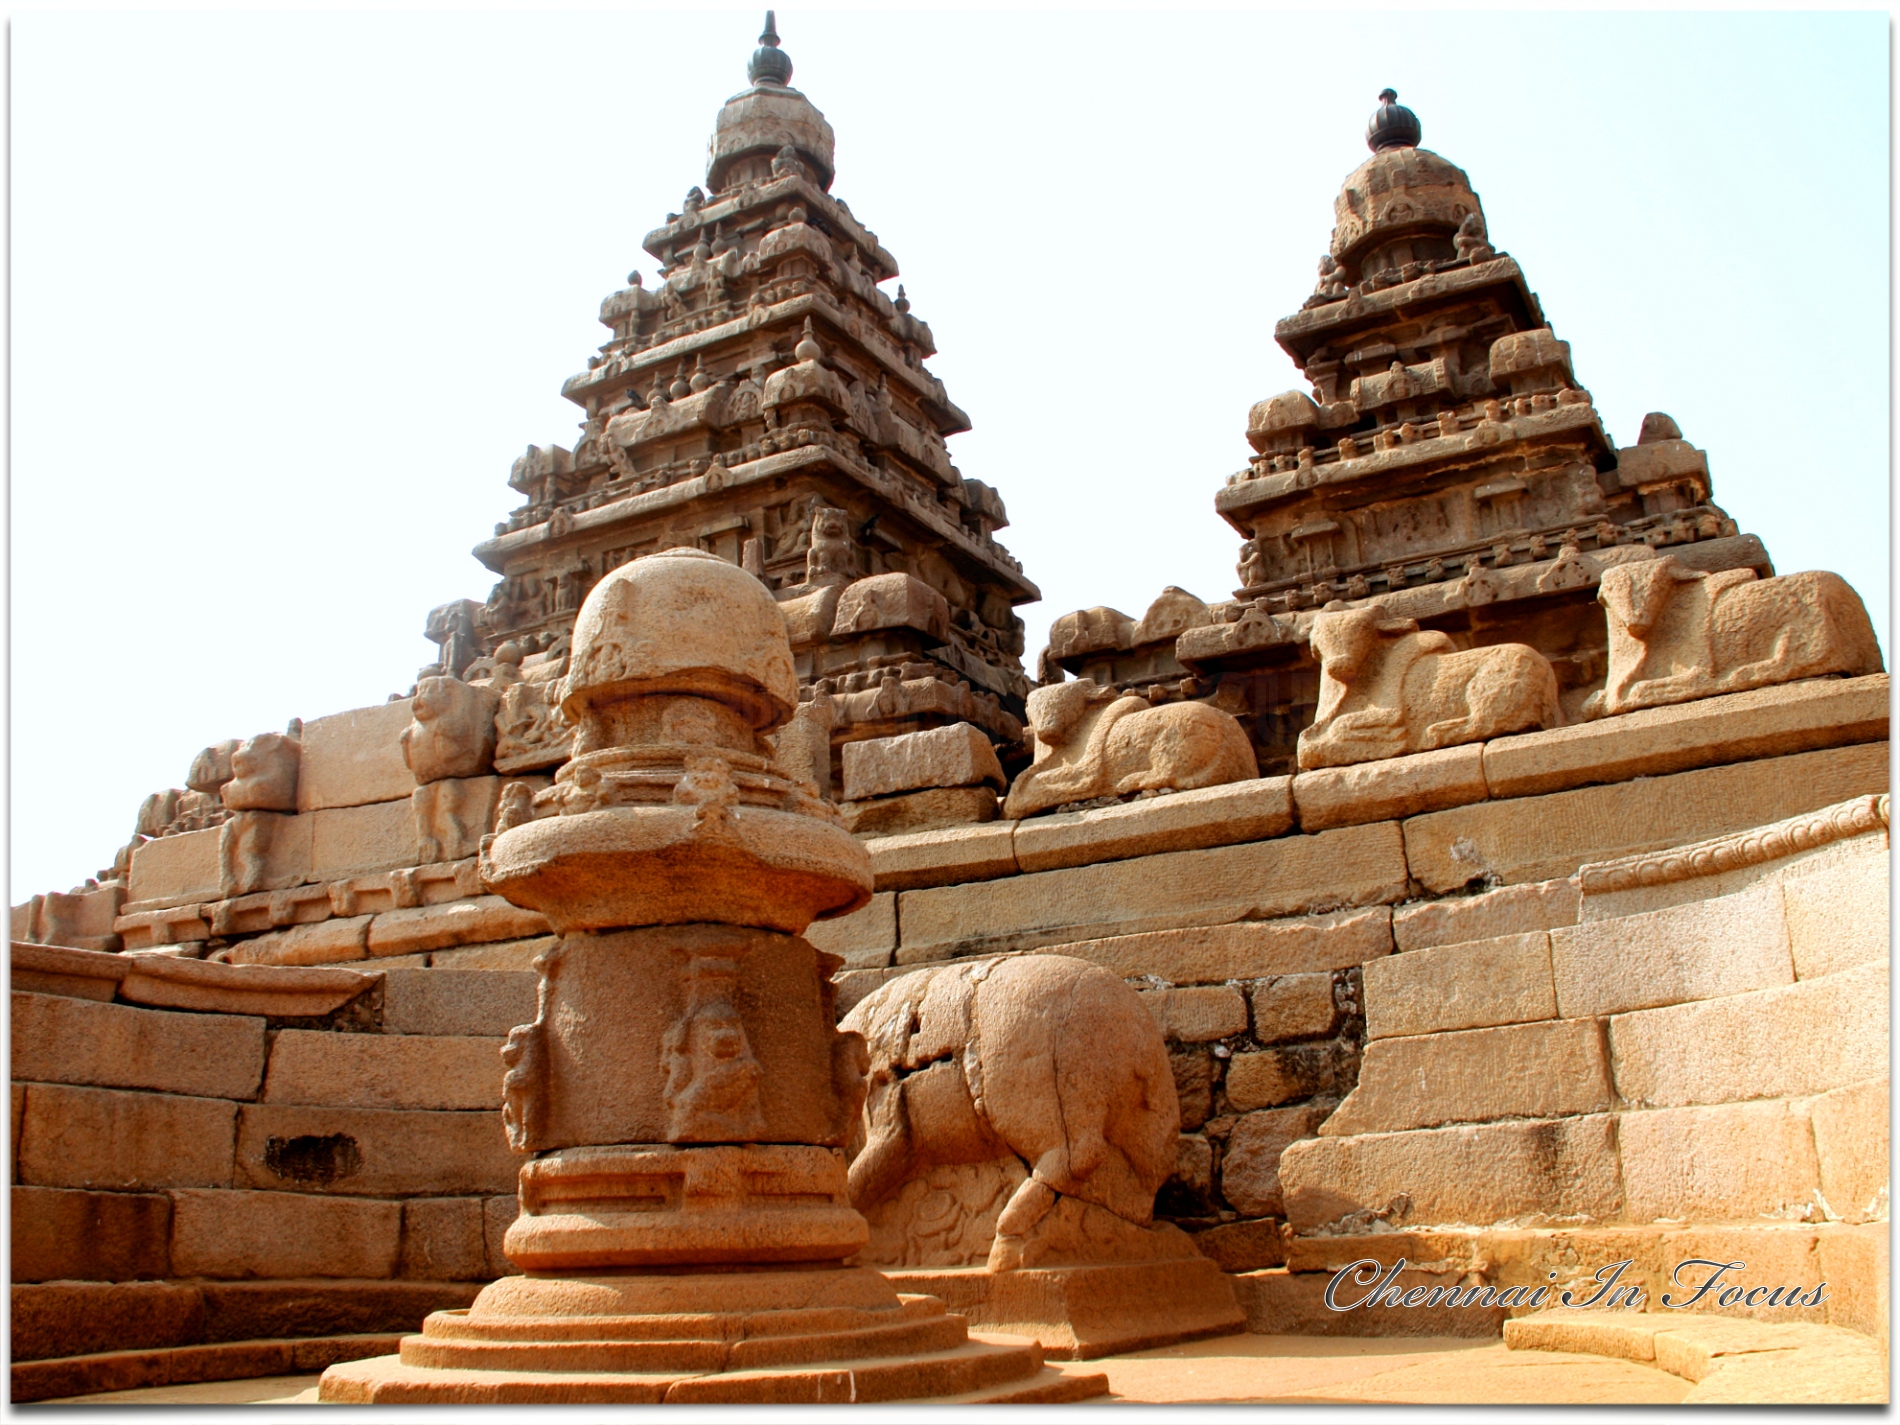 Mahabalipuram Shore Temple - Chennai In Focus